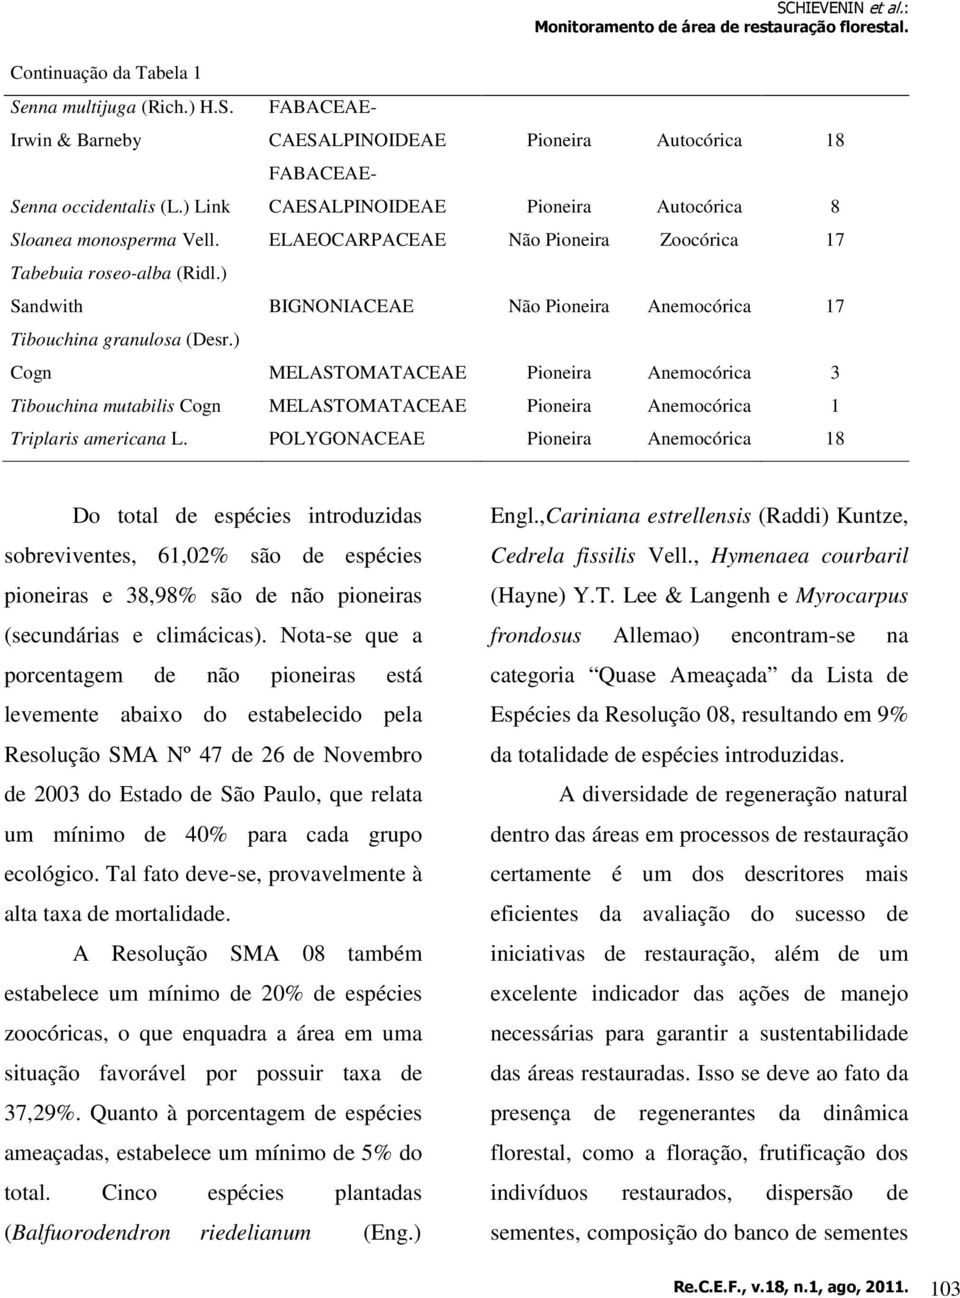 ) Sandwith BIGNONIACEAE Não Pioneira Anemocórica 17 Tibouchina granulosa (Desr.